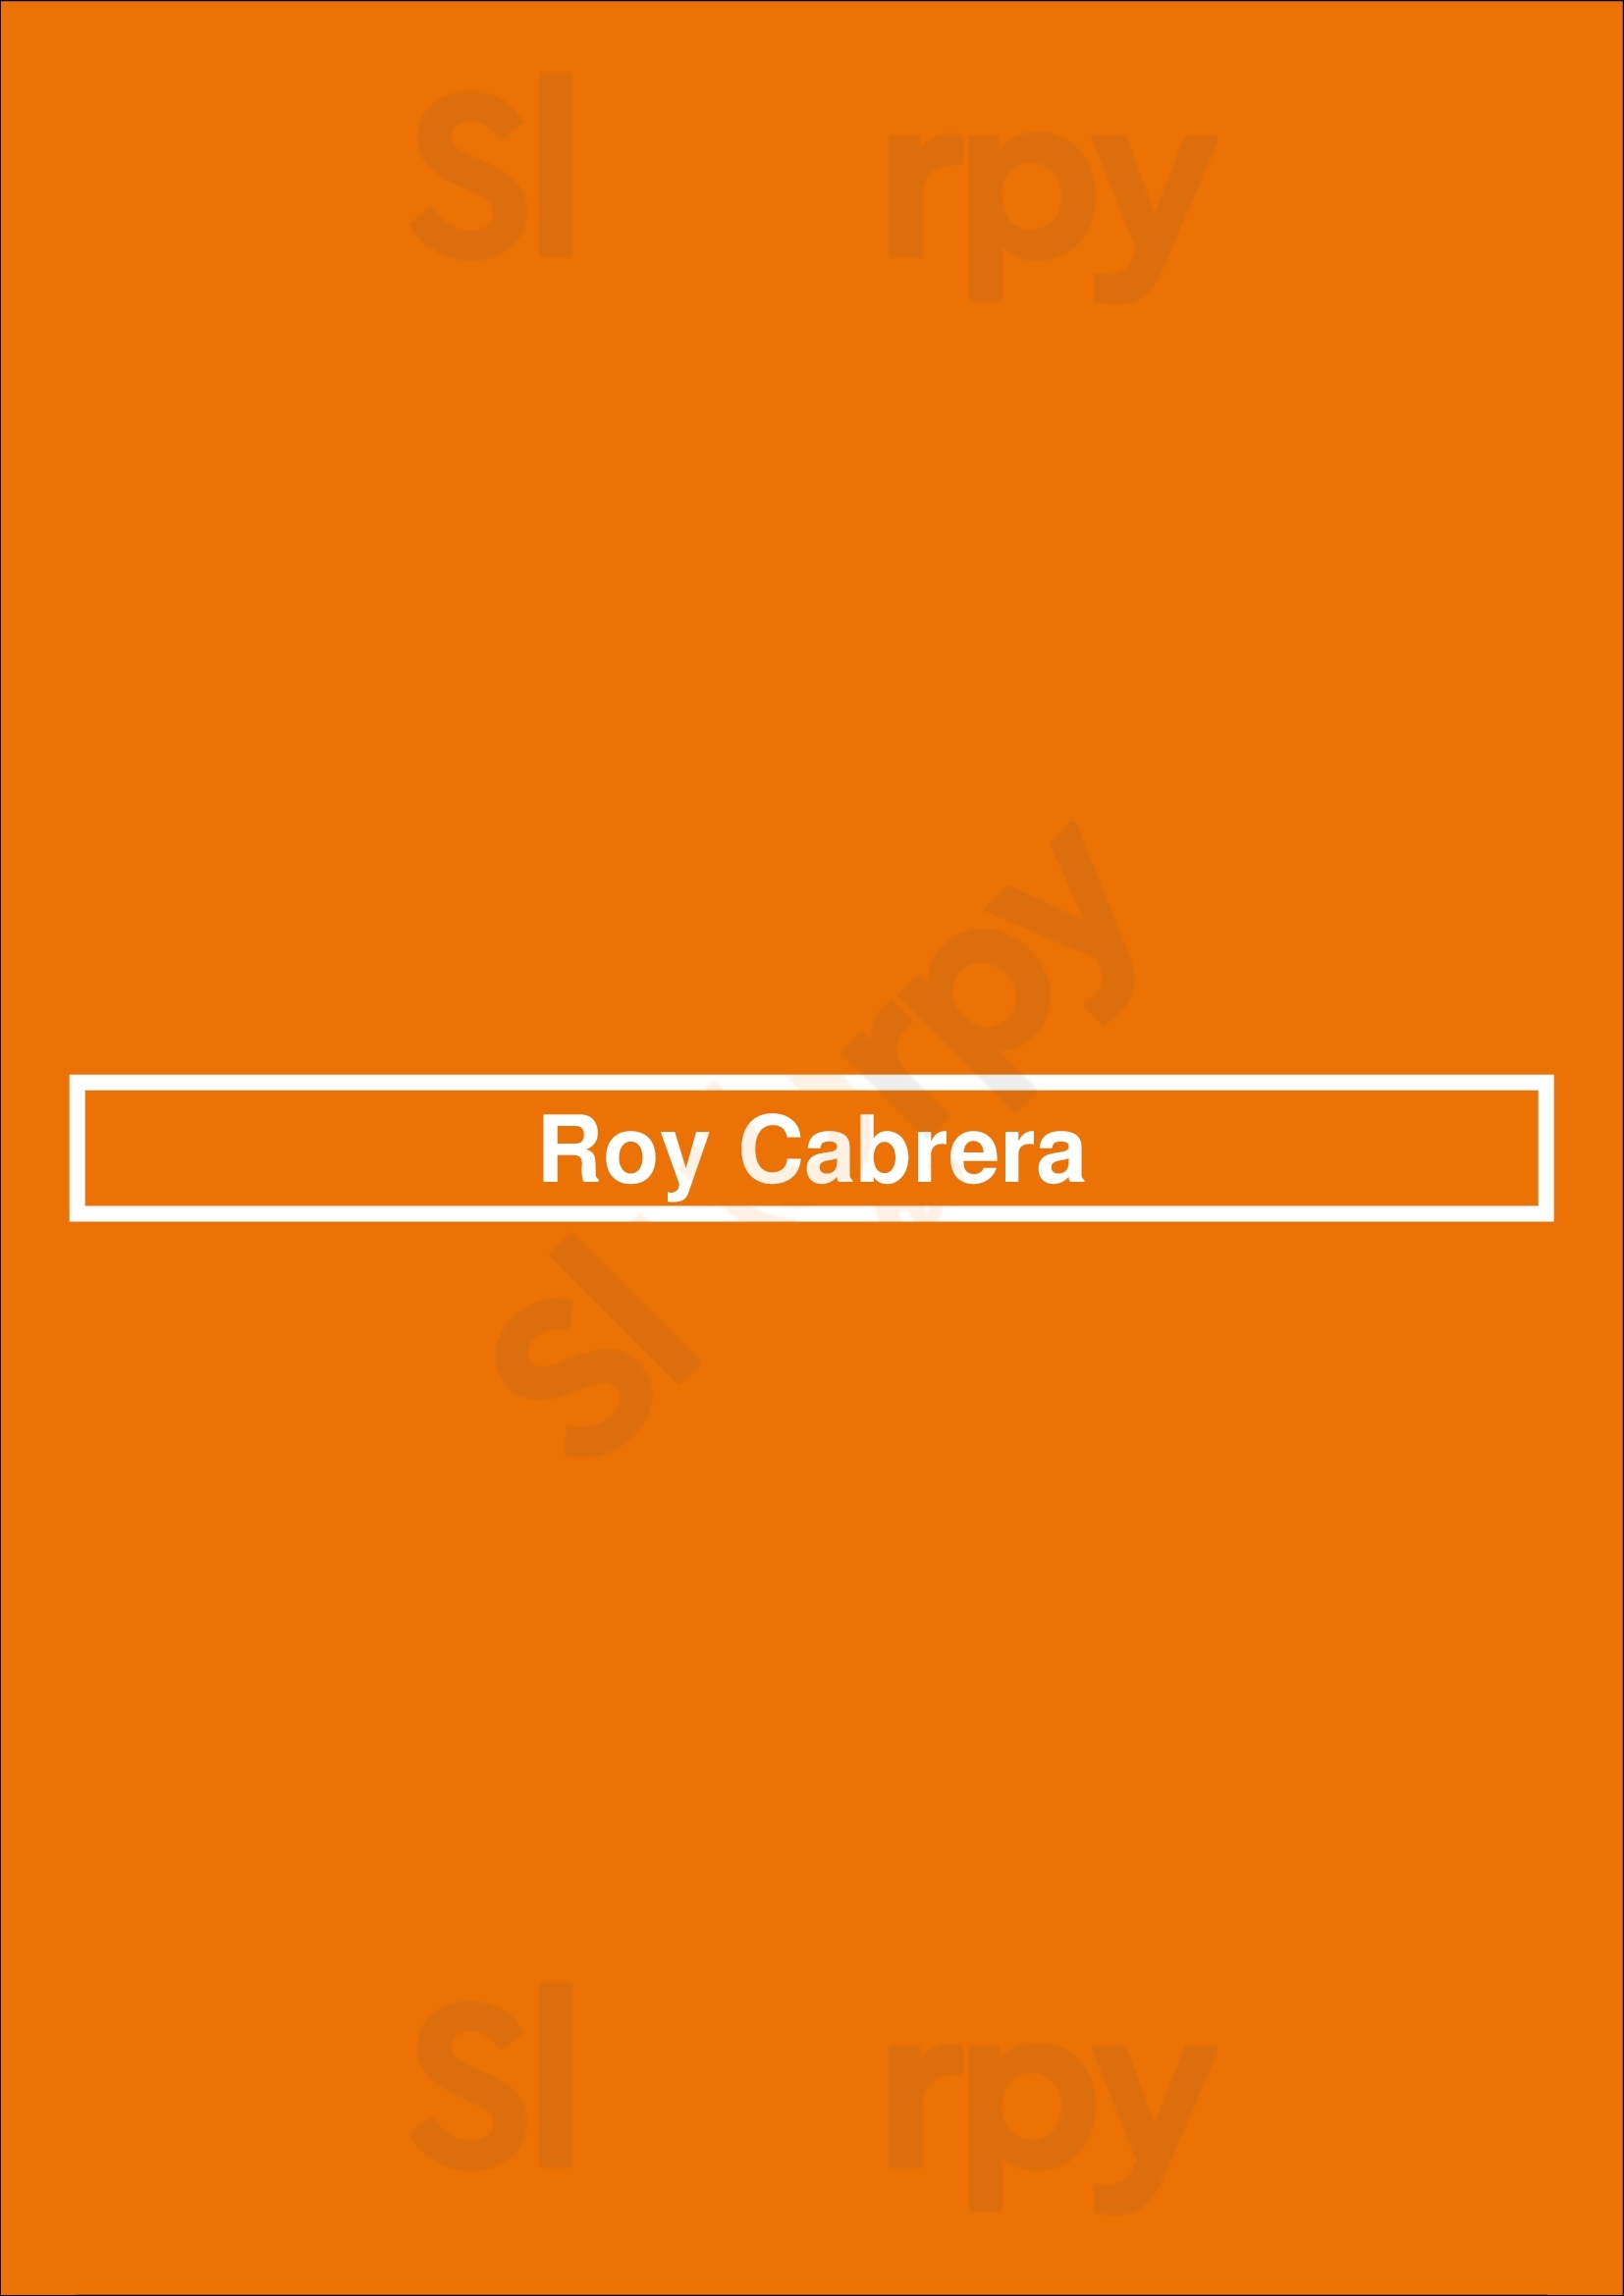 Roy Cabrera Buenos Aires Menu - 1